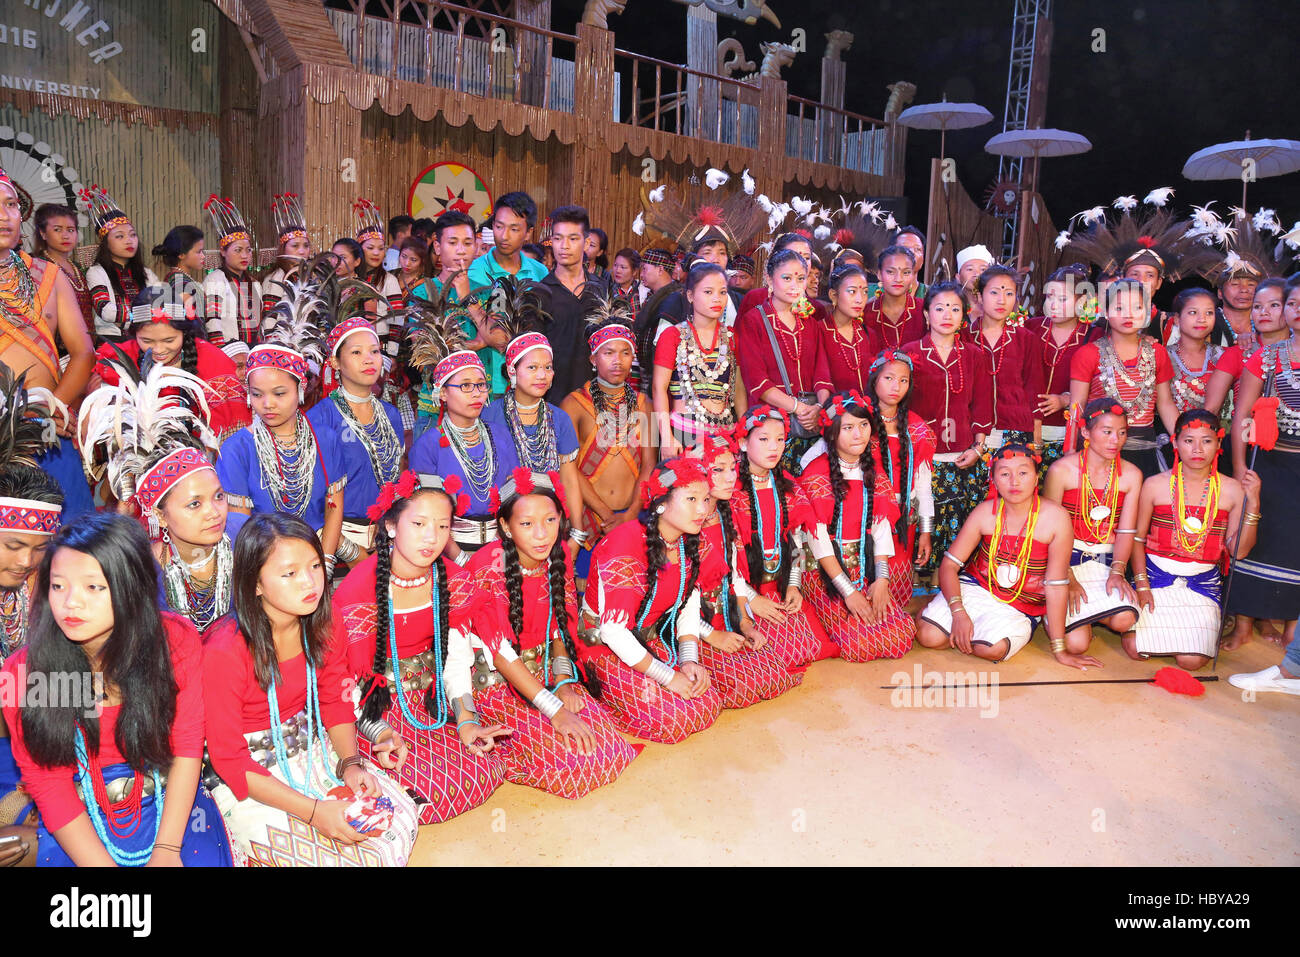 Groupe de danseurs tribaux indiens Pic . La ville d'Ajmer, Rajasthan, en Inde, au cours d'un festival de danse tribale Banque D'Images